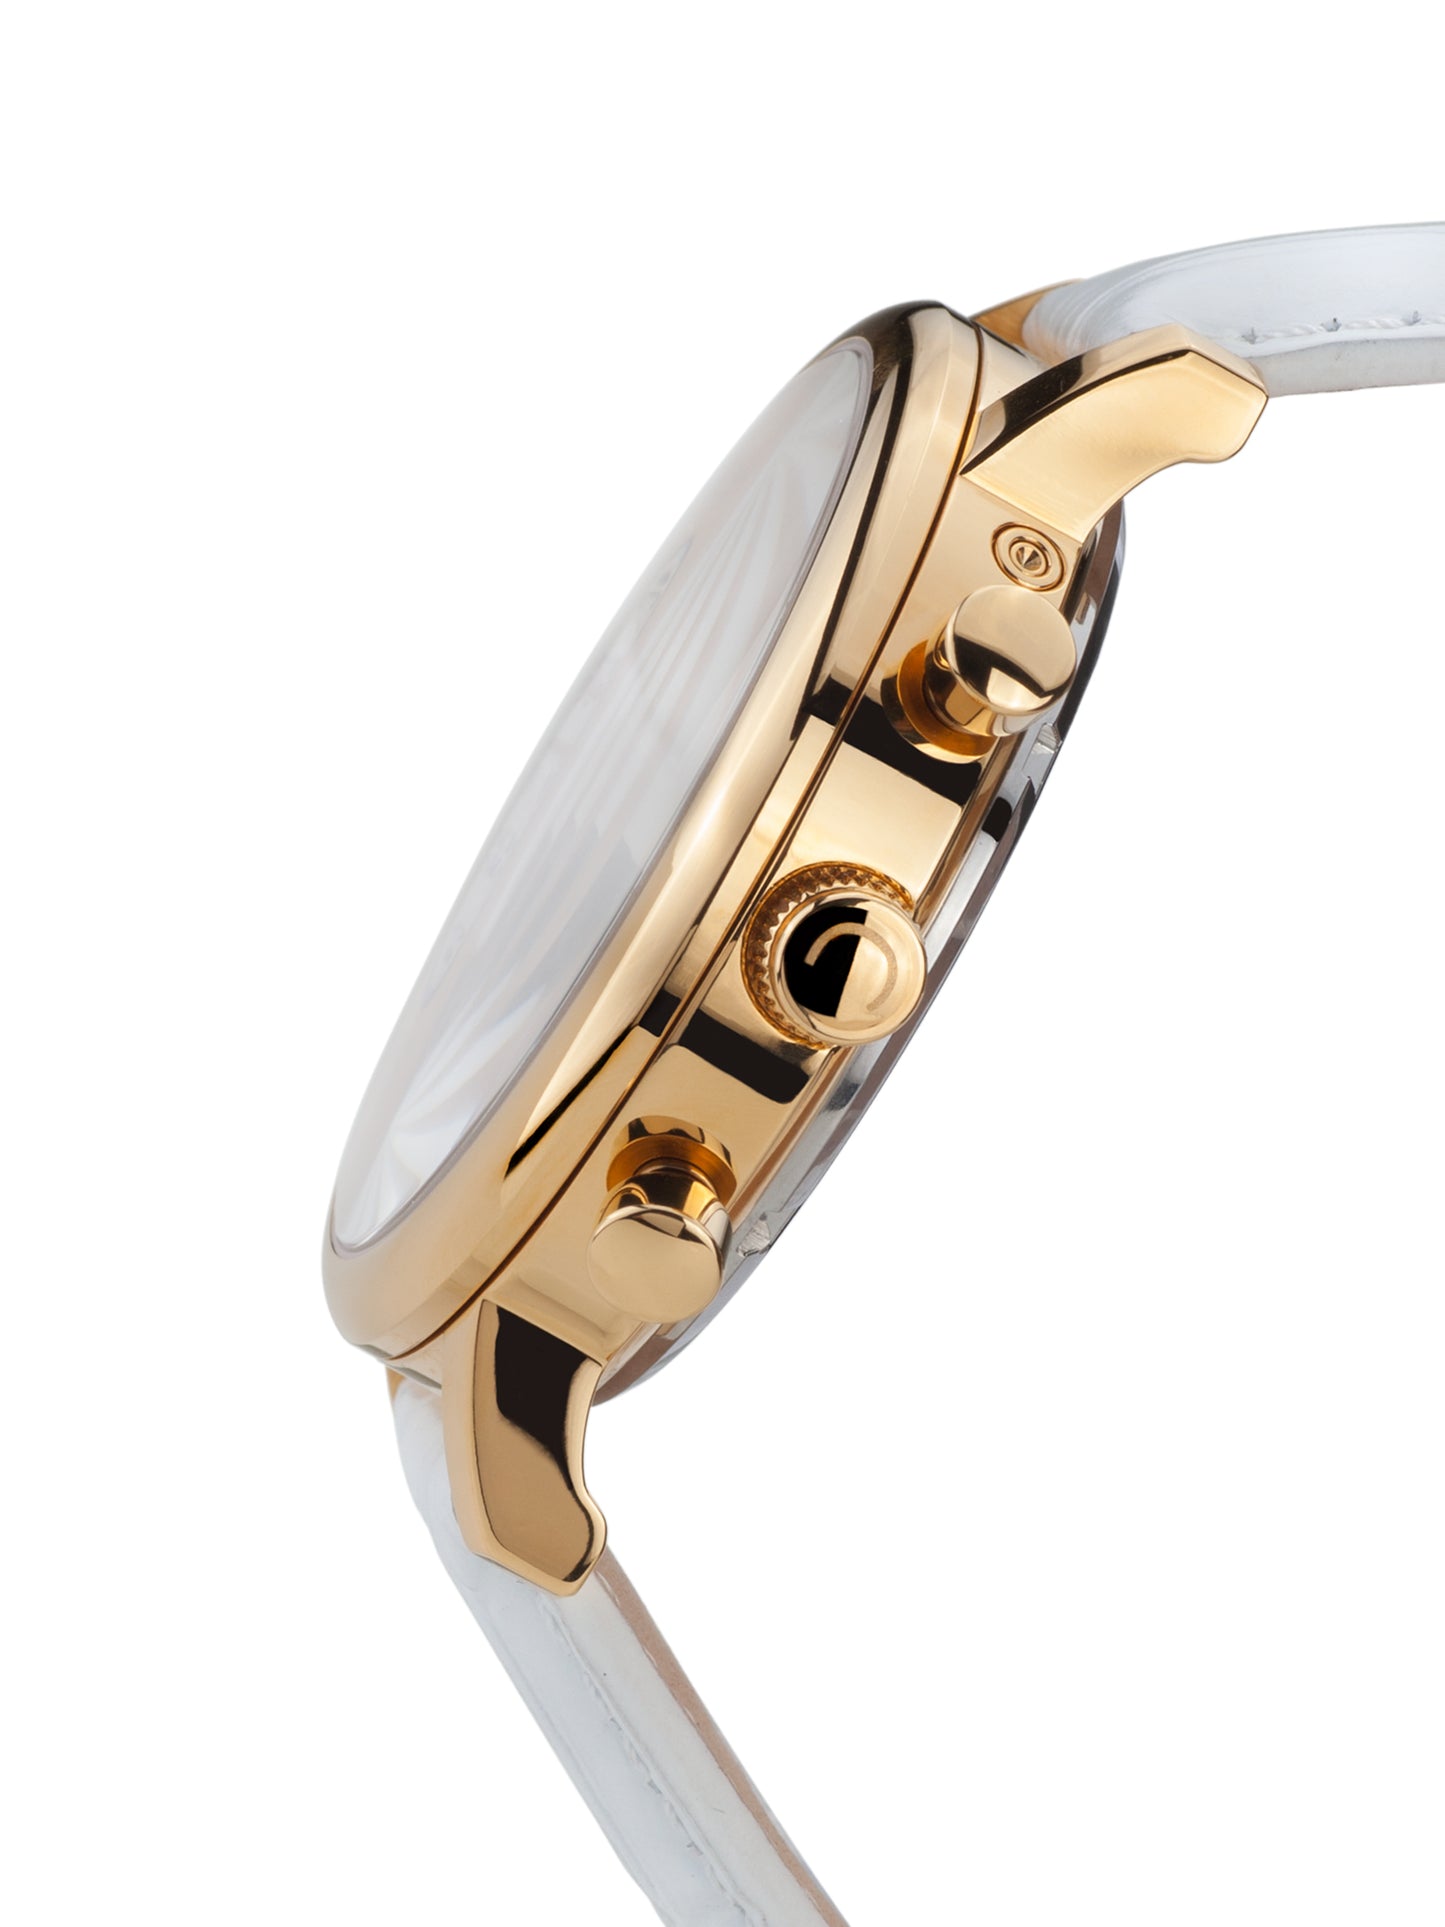 Automatic watches — Argos — Chrono Diamond — gold IP